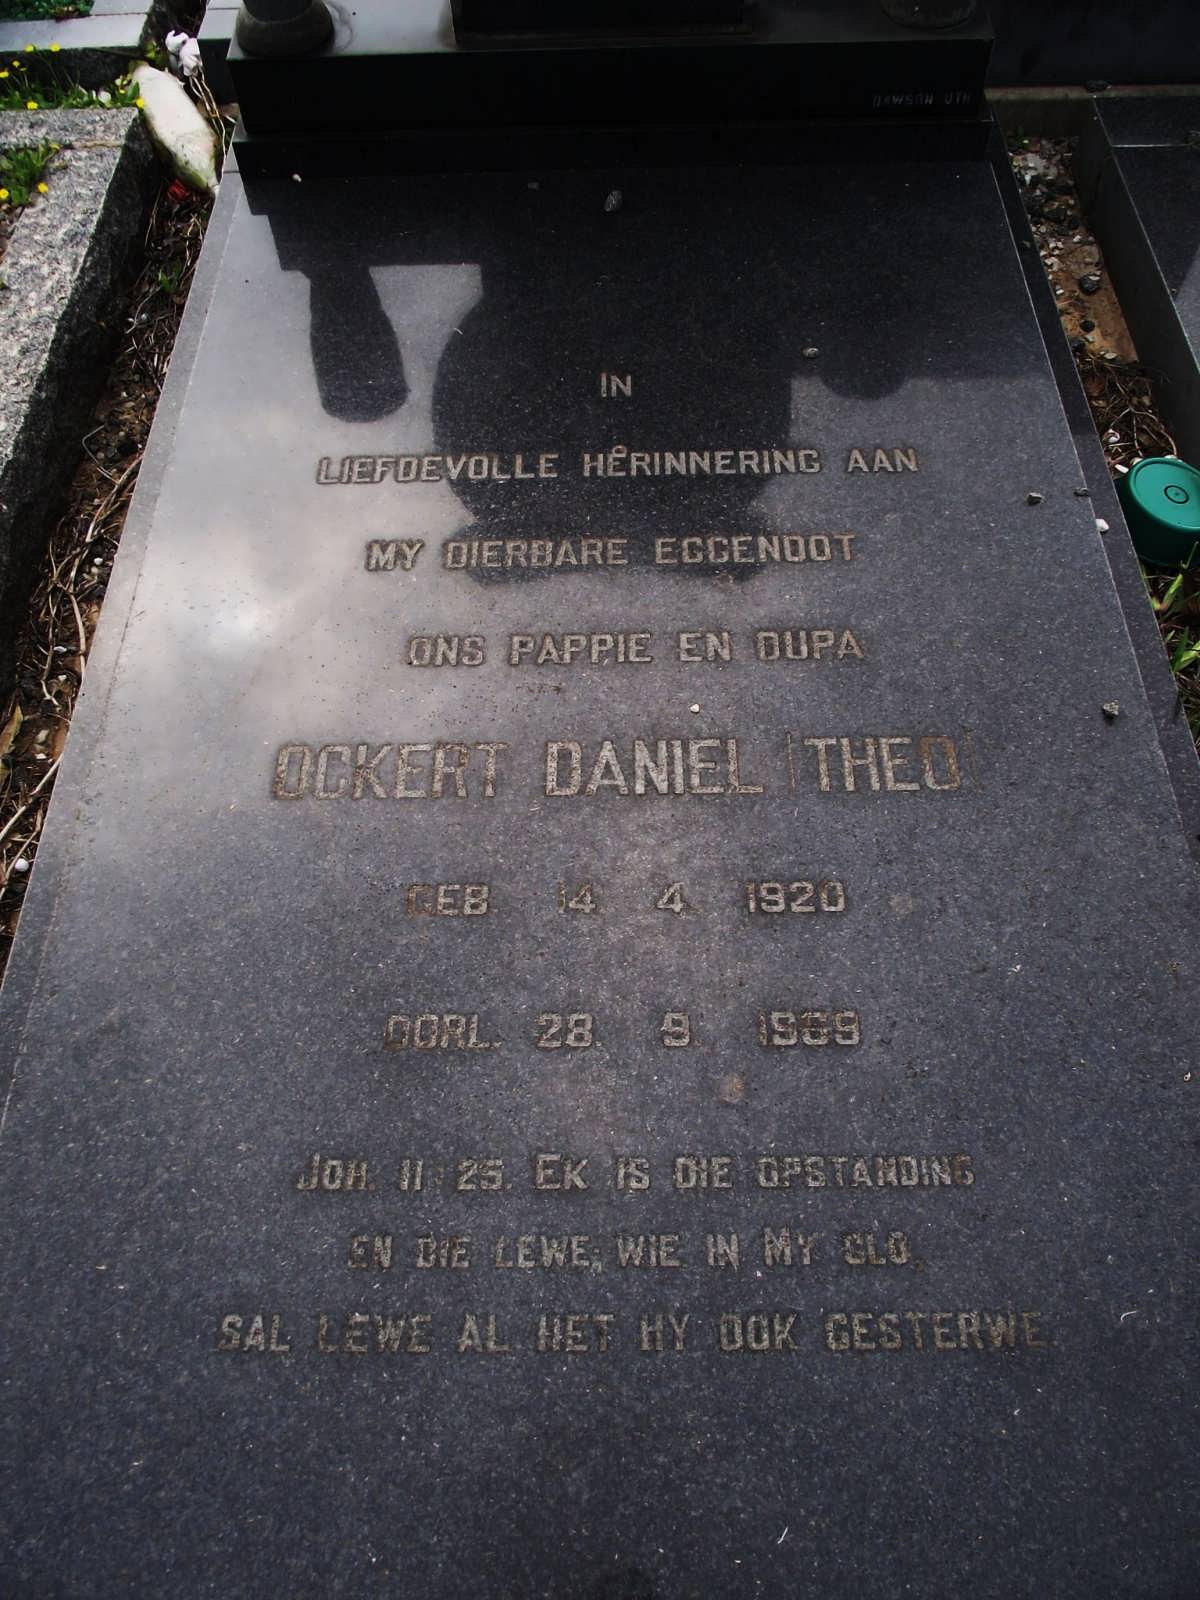 COETZEE Ockert Daniel Theo 1920-1969